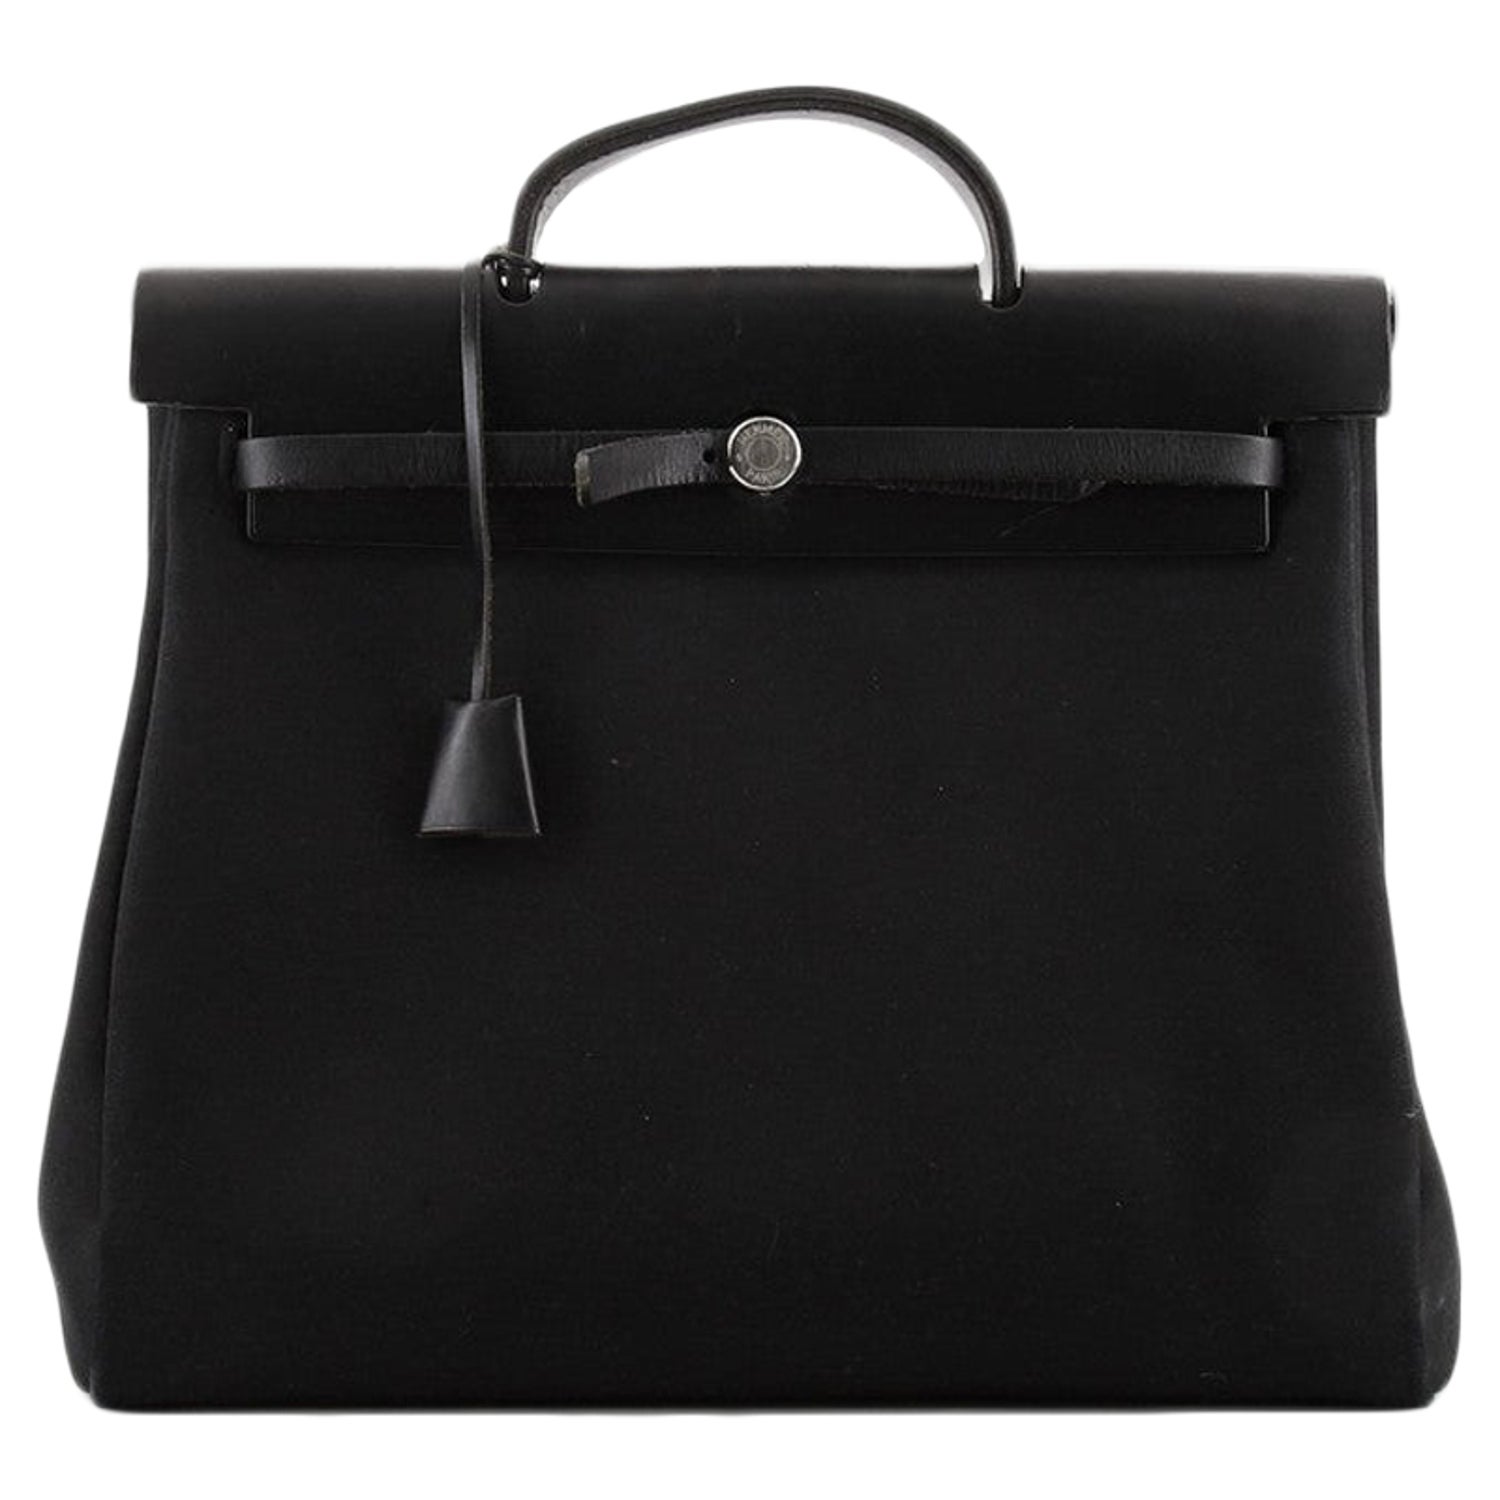 In-the-loop leather handbag Hermès Pink in Leather - 32587341